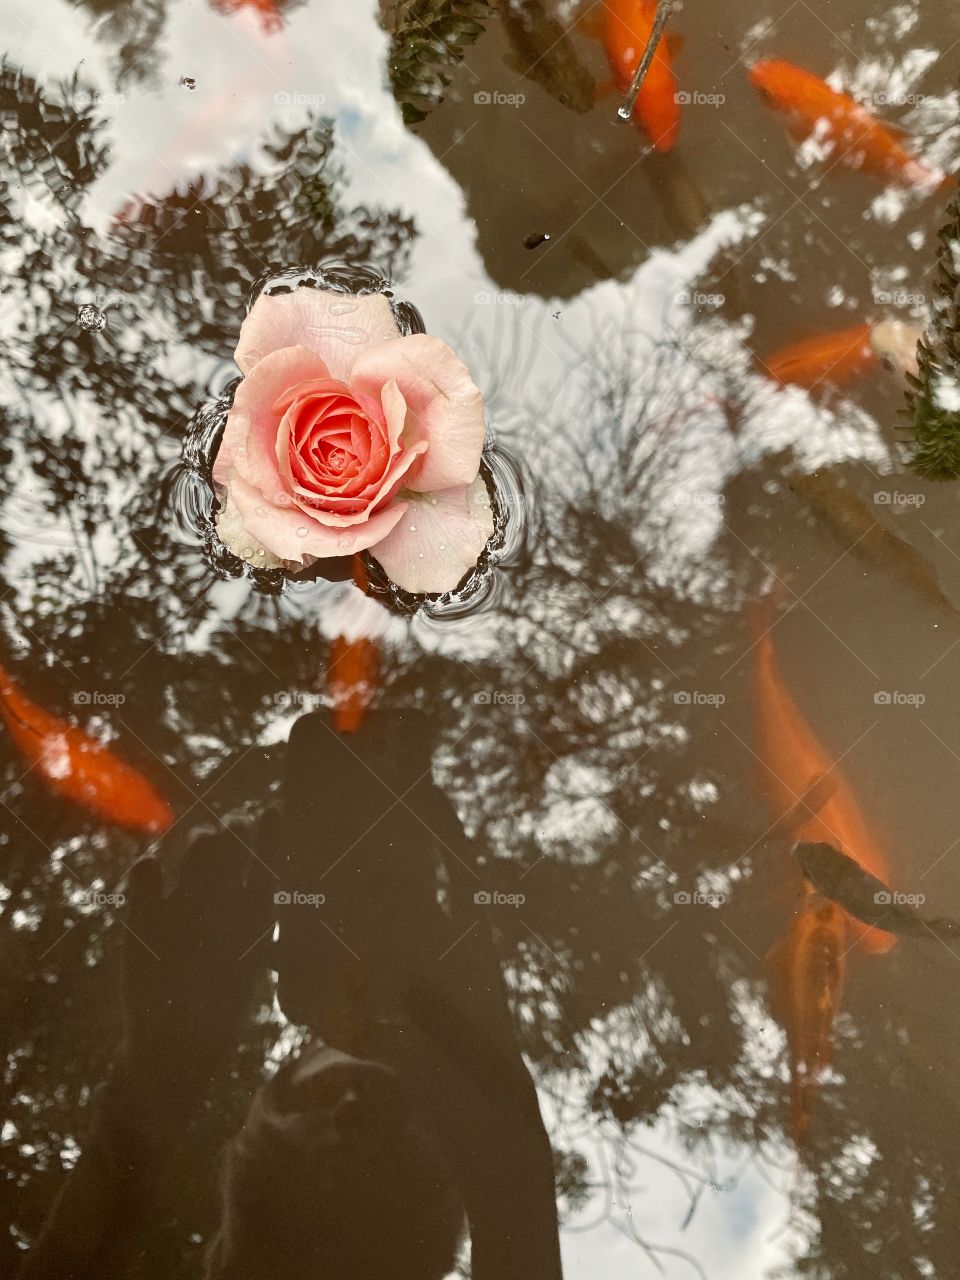 Rose in the koi pond